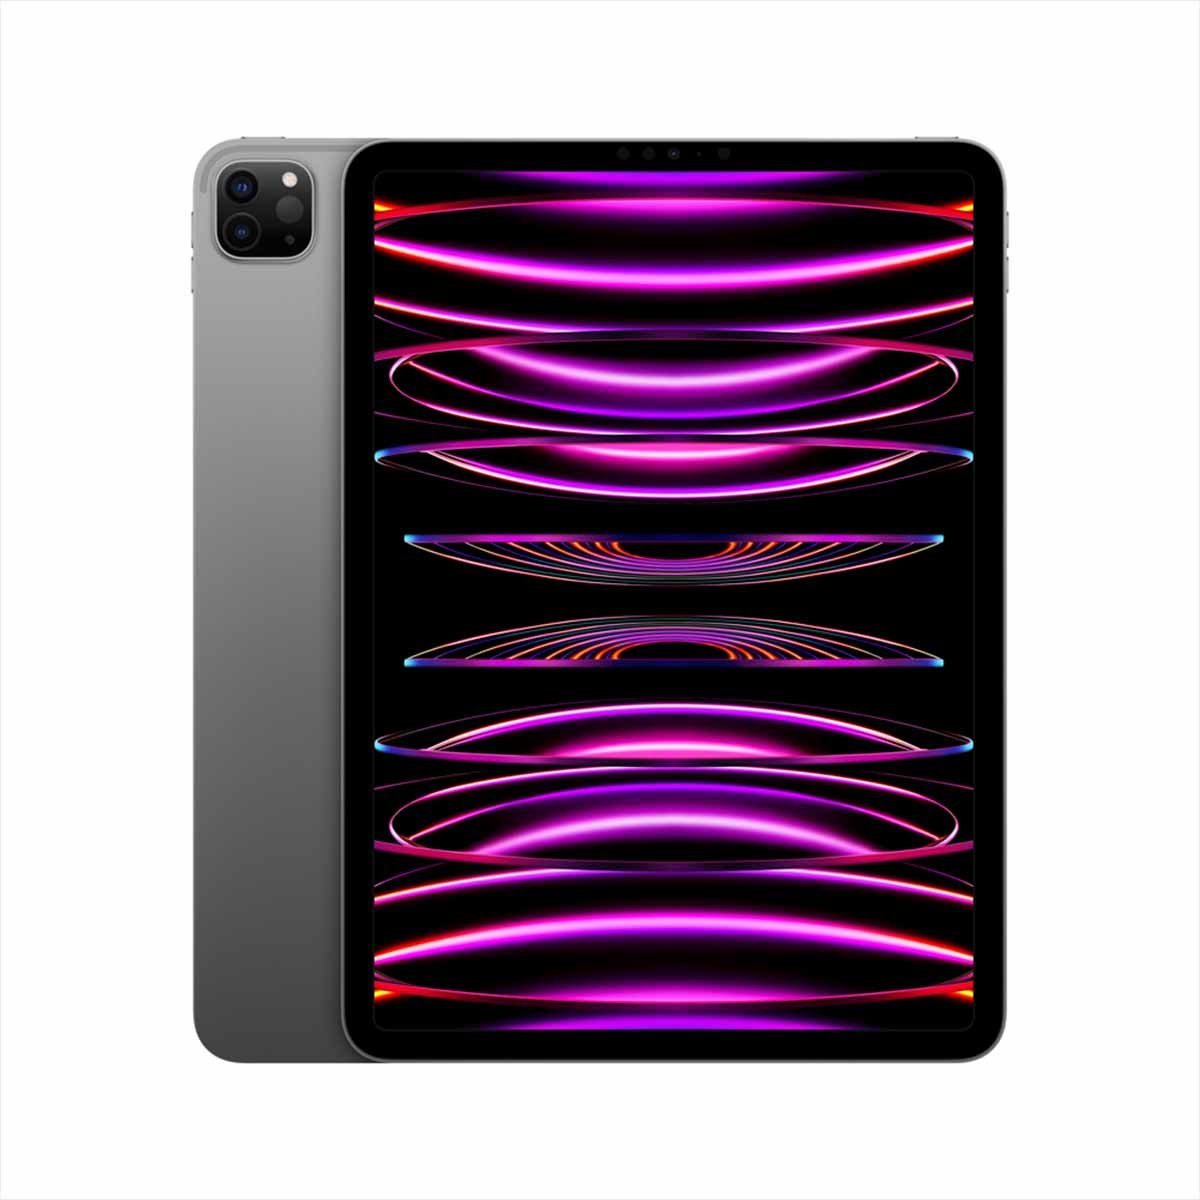 iPad Pro 9.7 (Reacondicionado), Gris espacial